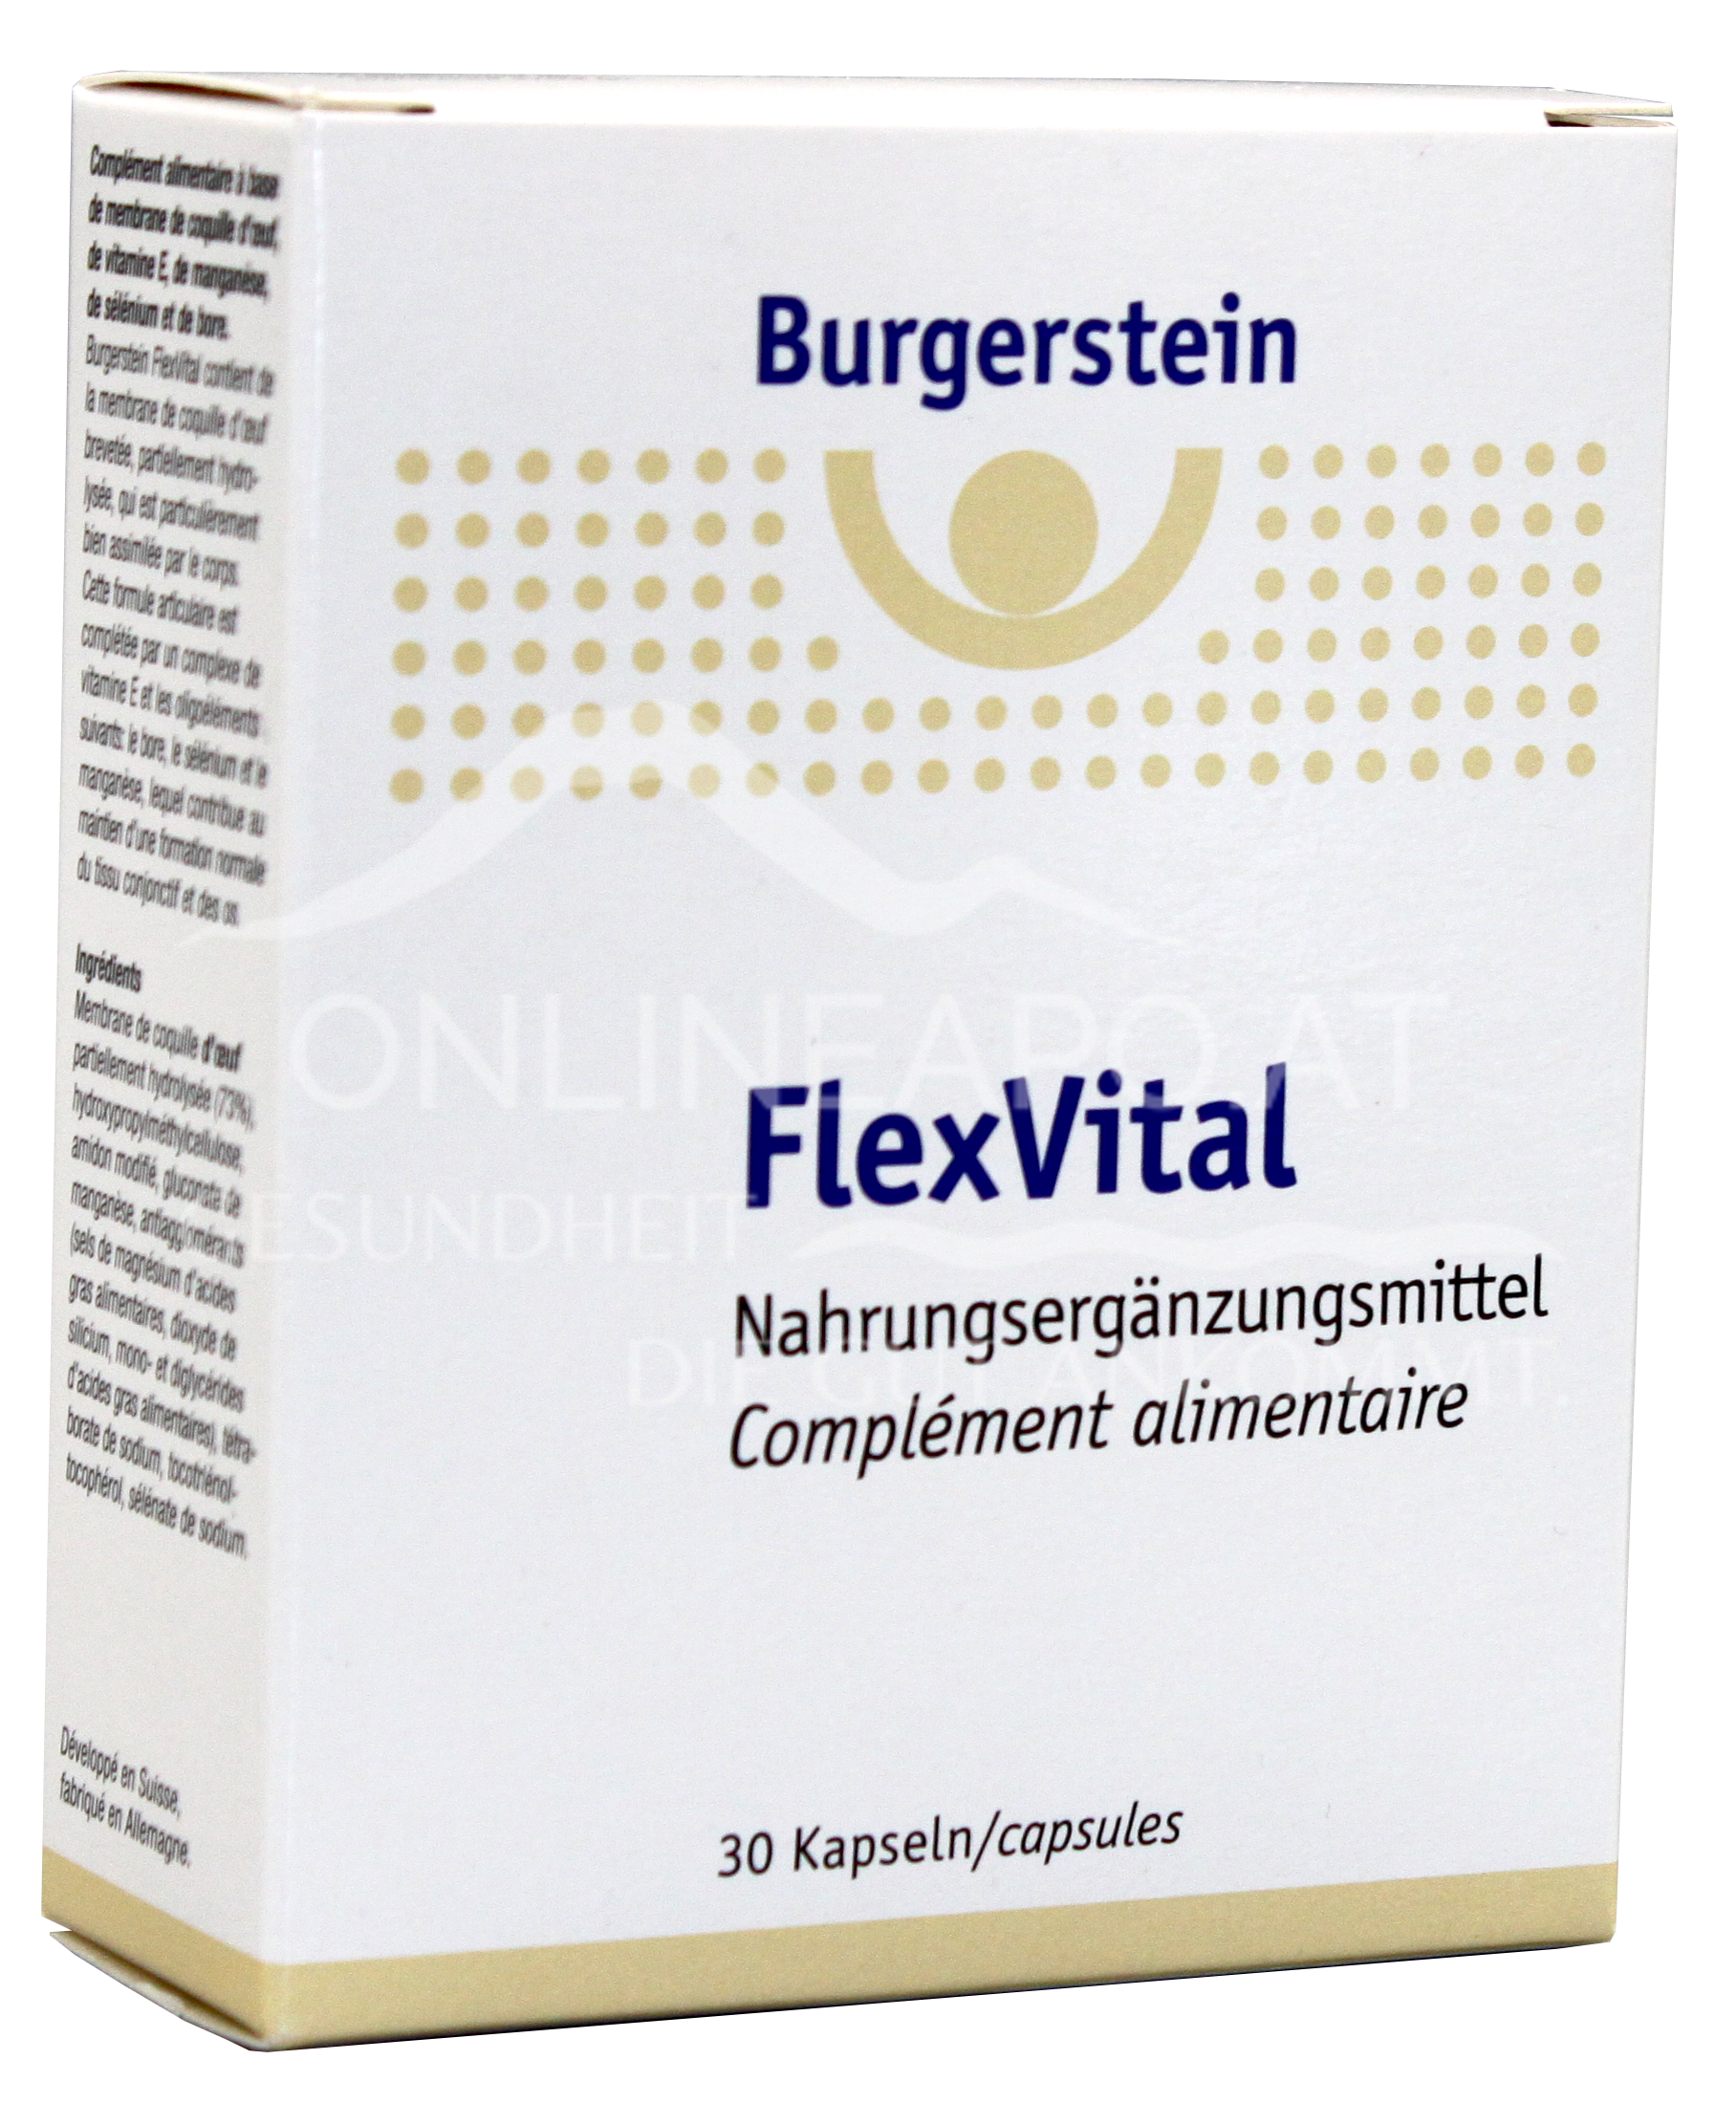 Burgerstein FlexVital Kapseln